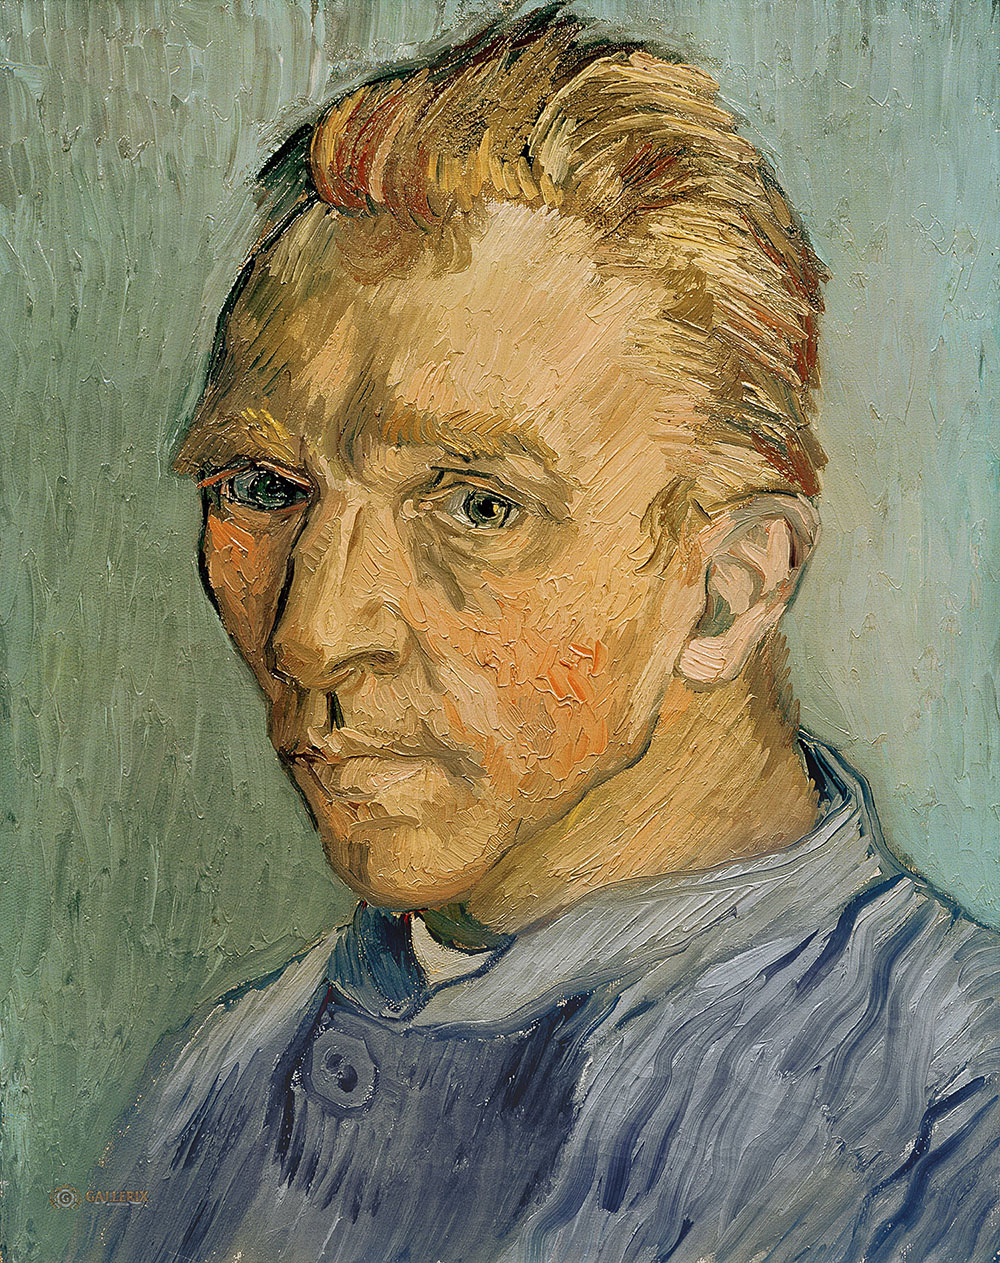 Винсент Ван Гог. "Автопортрет". 1889. Частная коллекция.